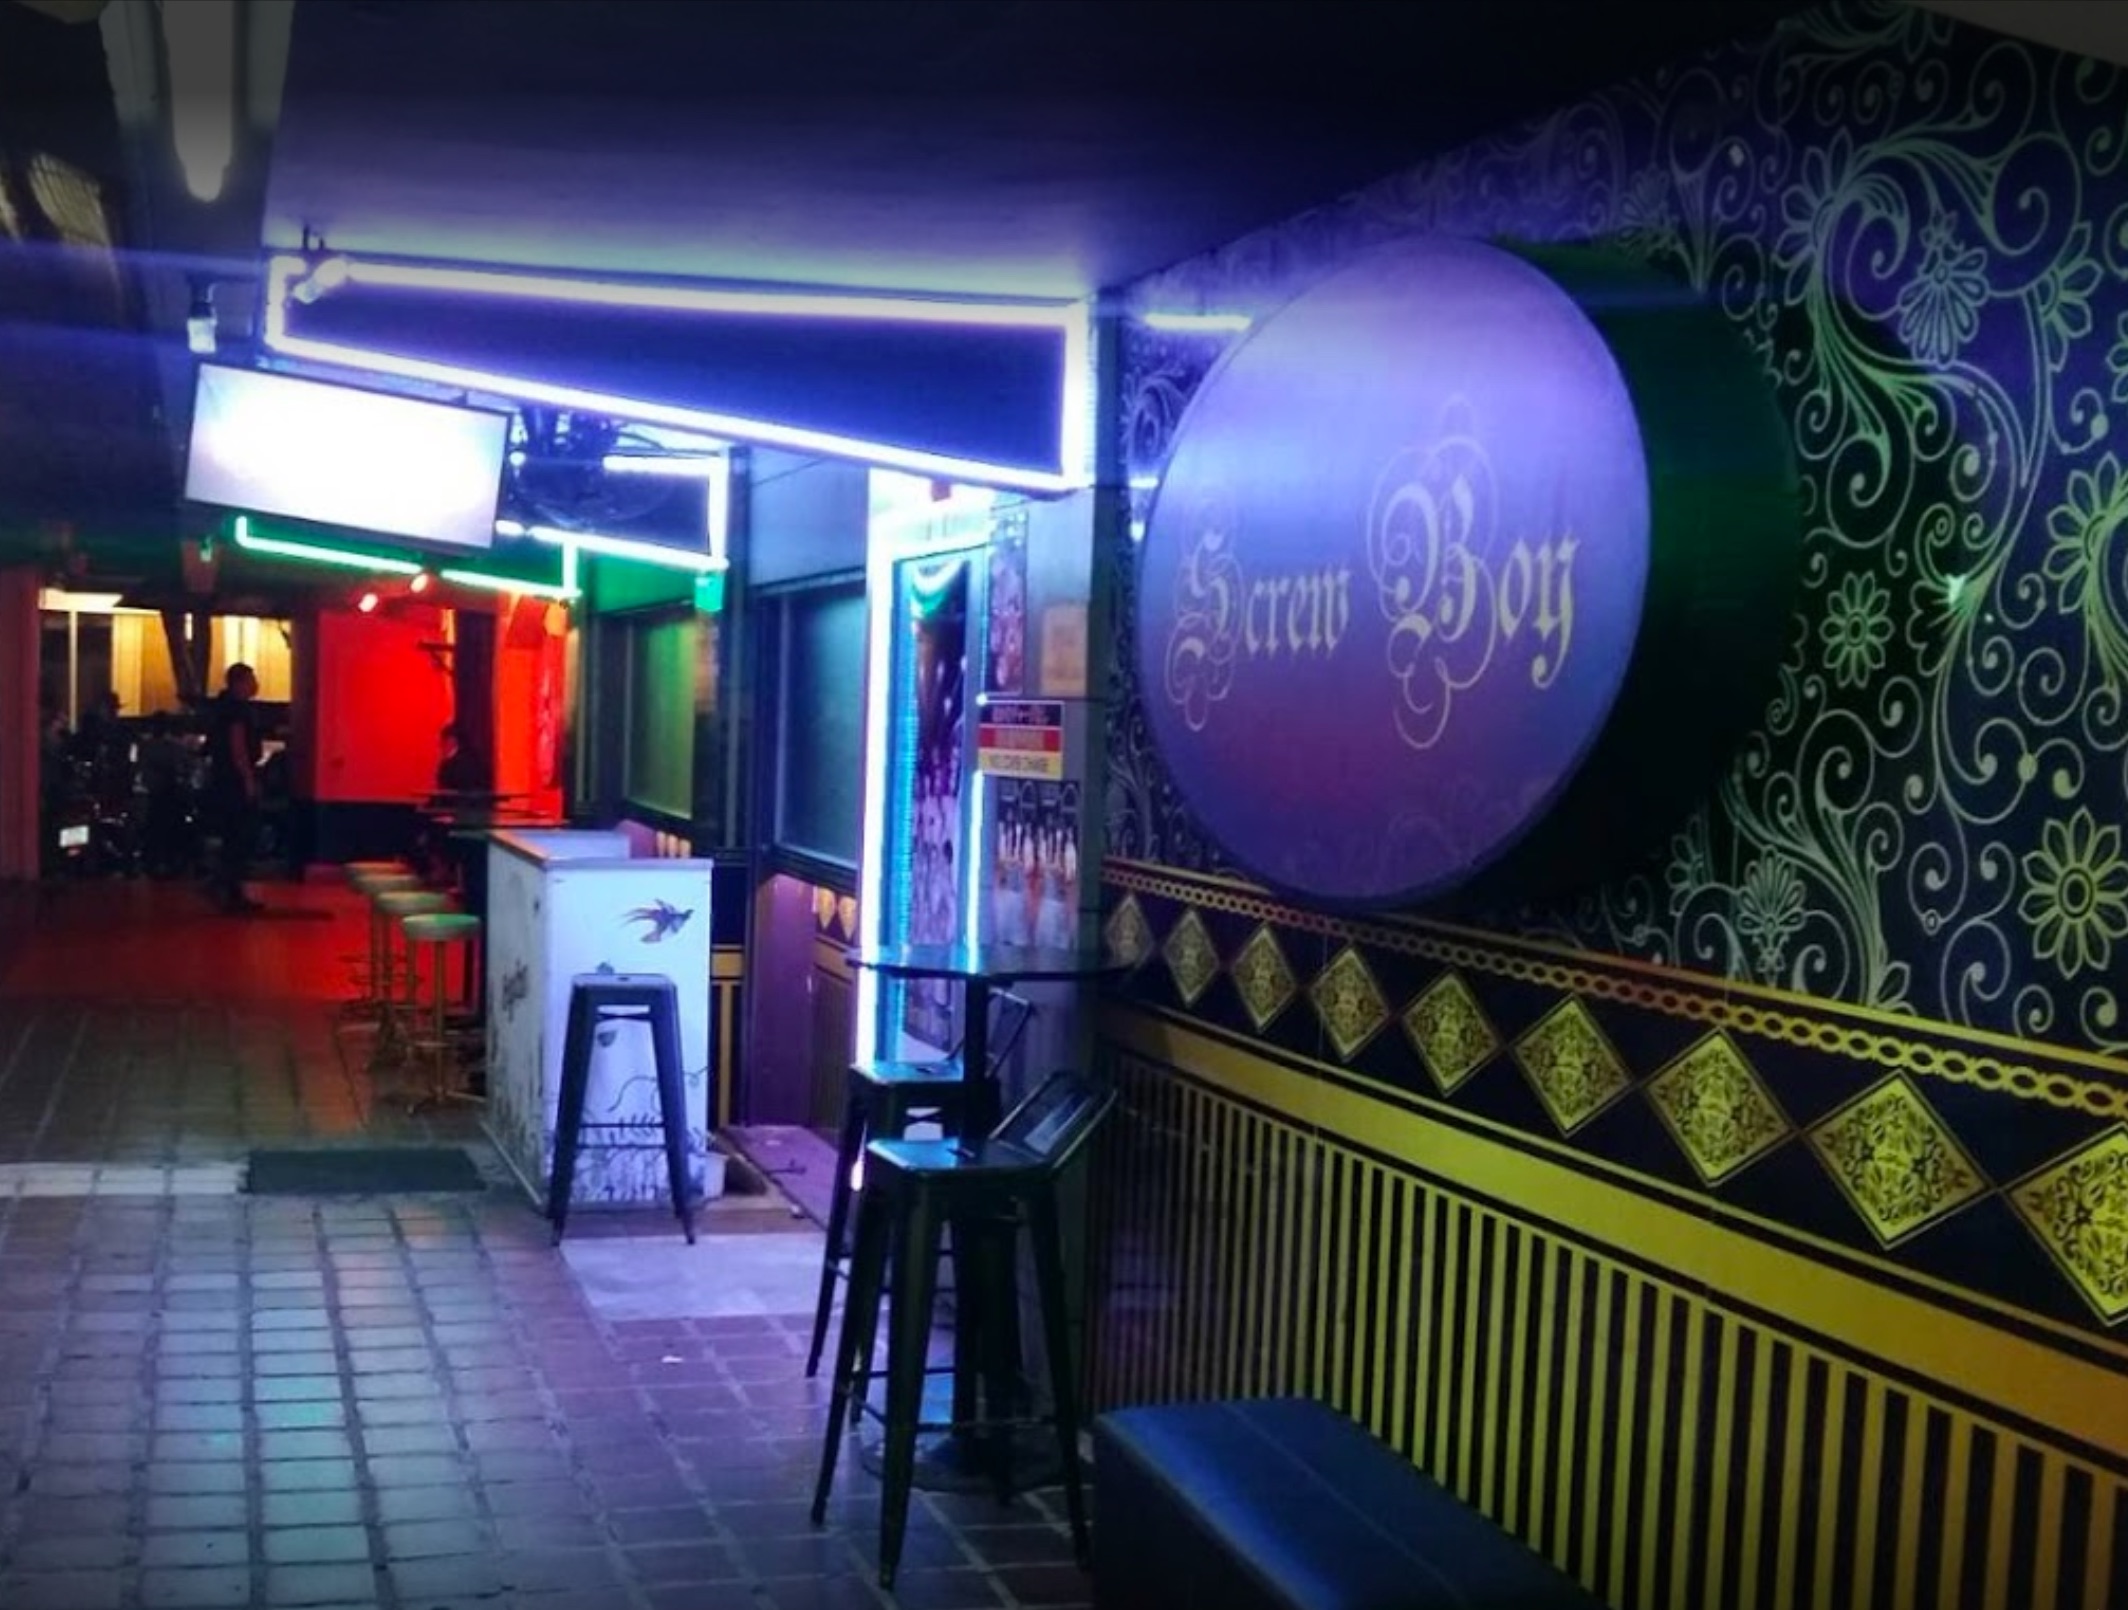 Screw Boy GoGo Bar Bangkok